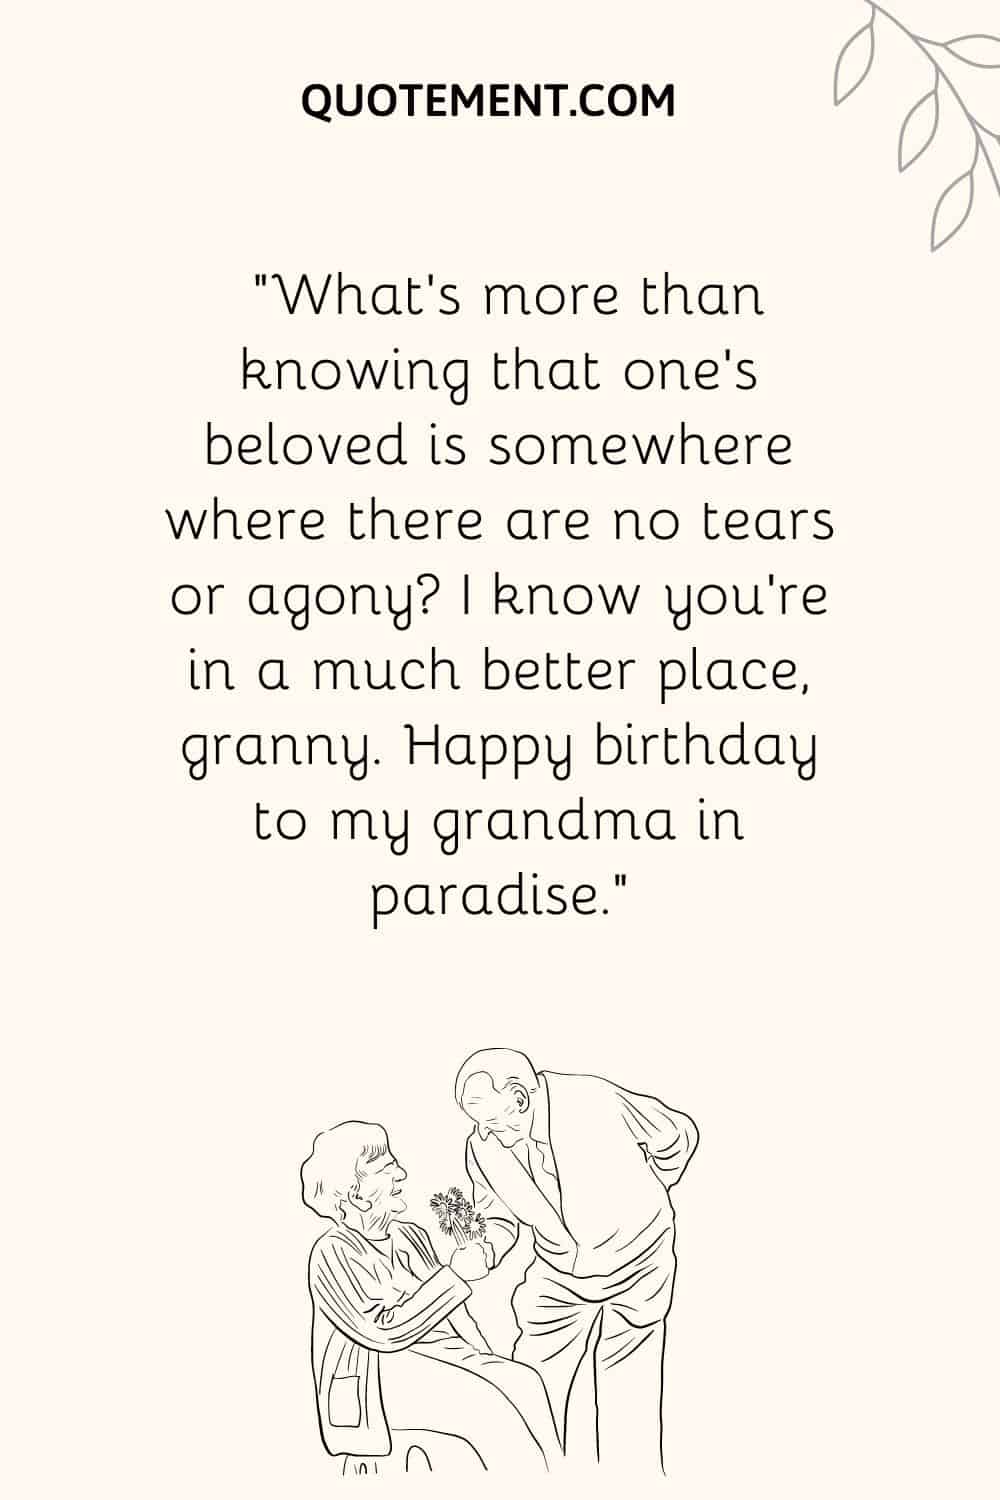 "Qué hay más que saber que el ser amado está en algún lugar donde no hay lágrimas ni agonía Sé que estás en un lugar mucho mejor, abuelita. Feliz cumpleaños a mi abuela en el paraíso".